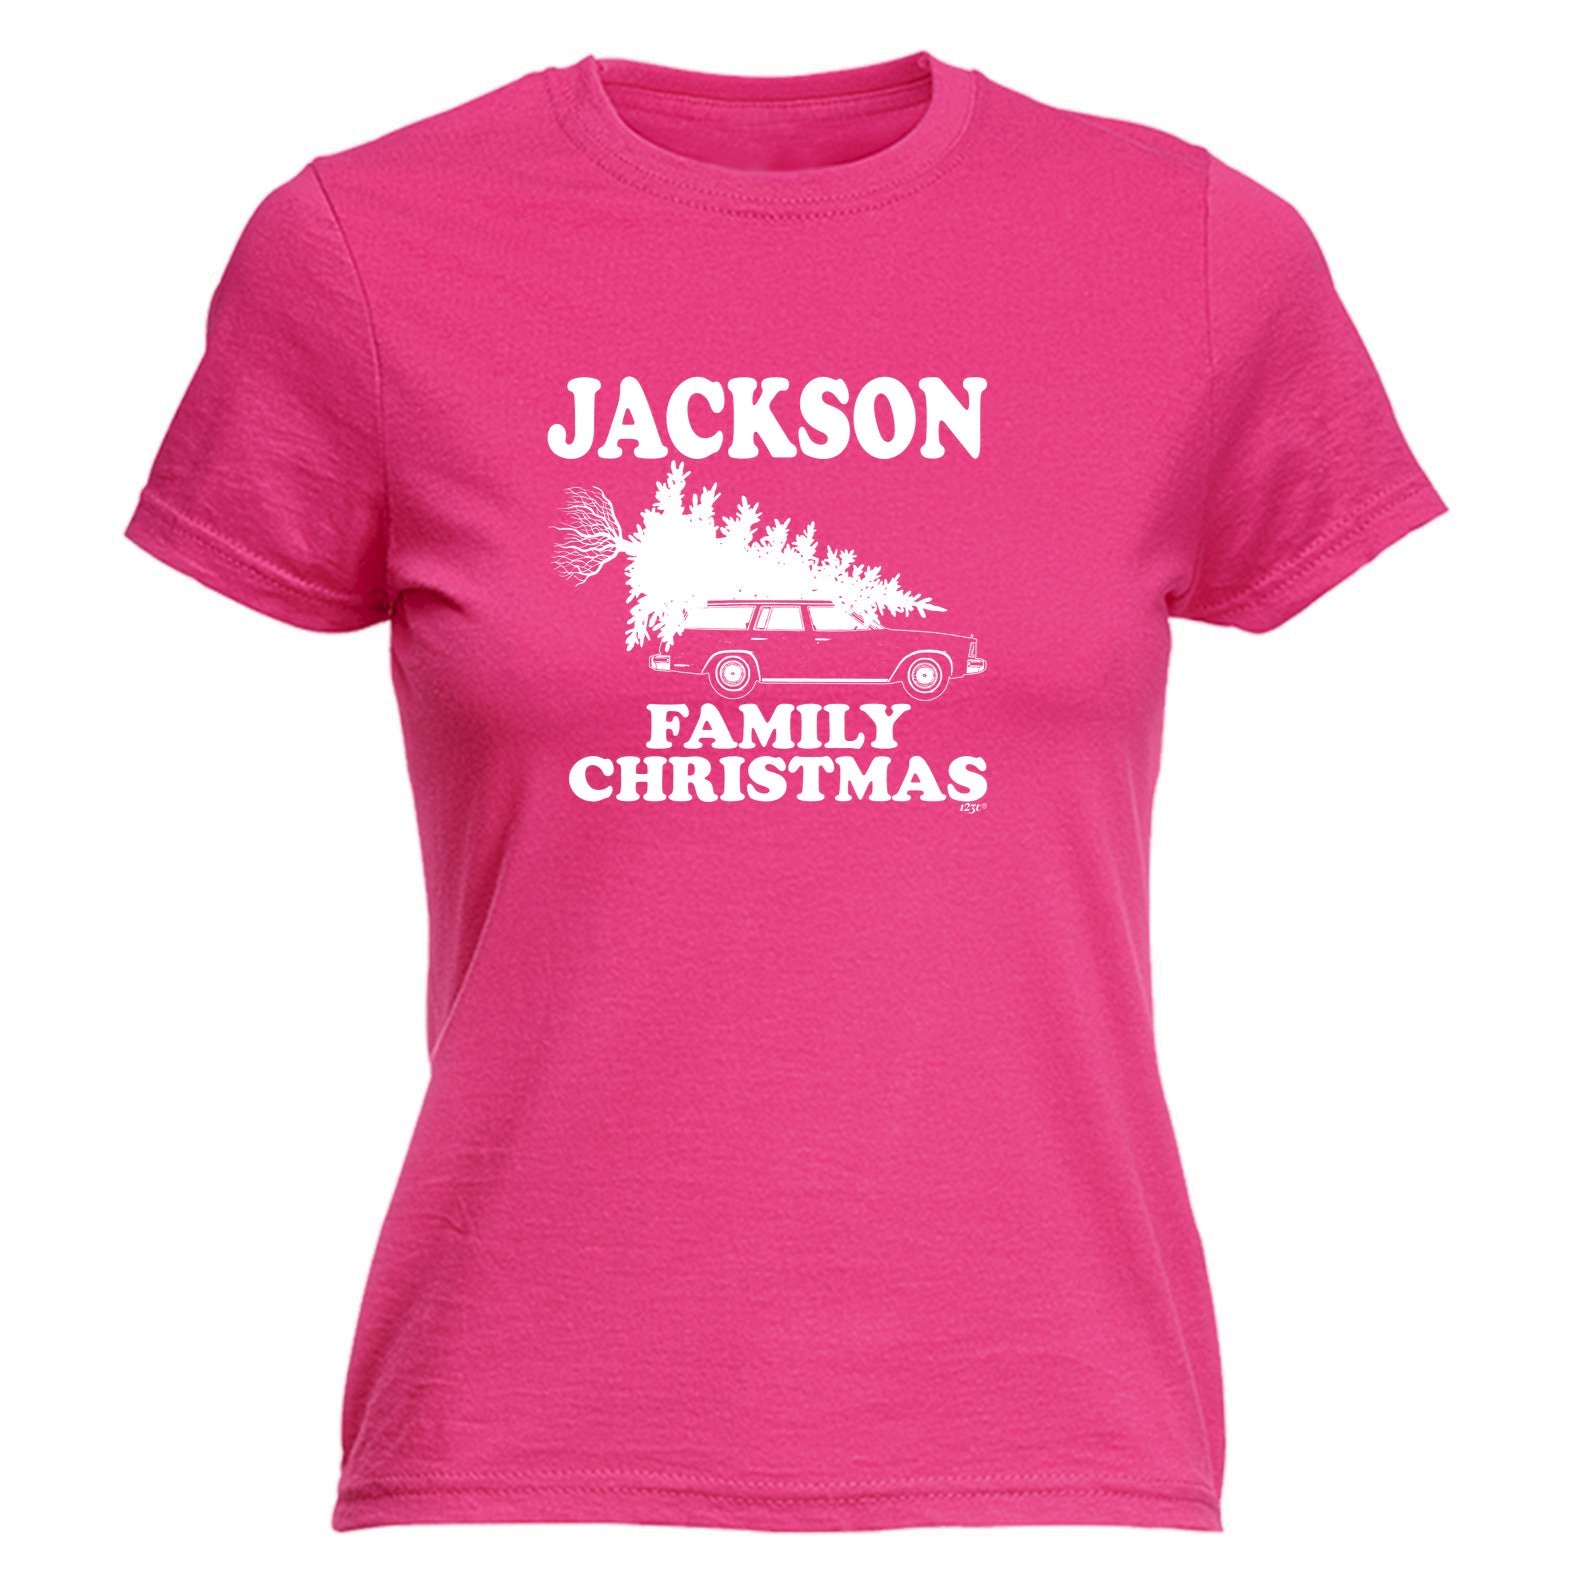 Family Christmas Jackson - Funny Womens T-Shirt Tshirt